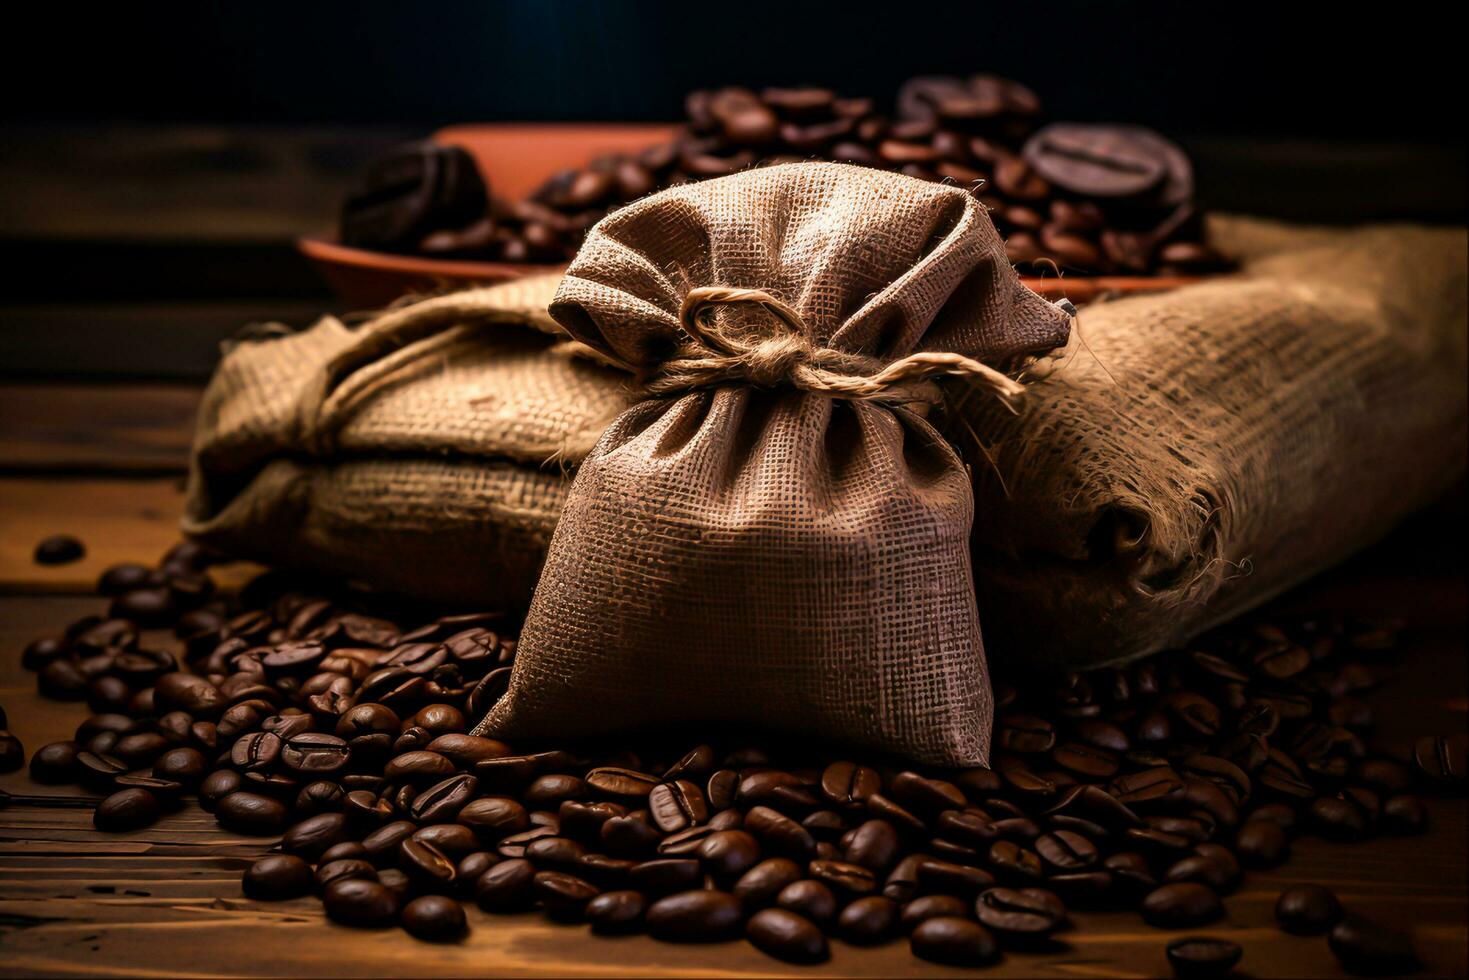 kaffe väska insvept i kaffe bönor, generativ ai foto